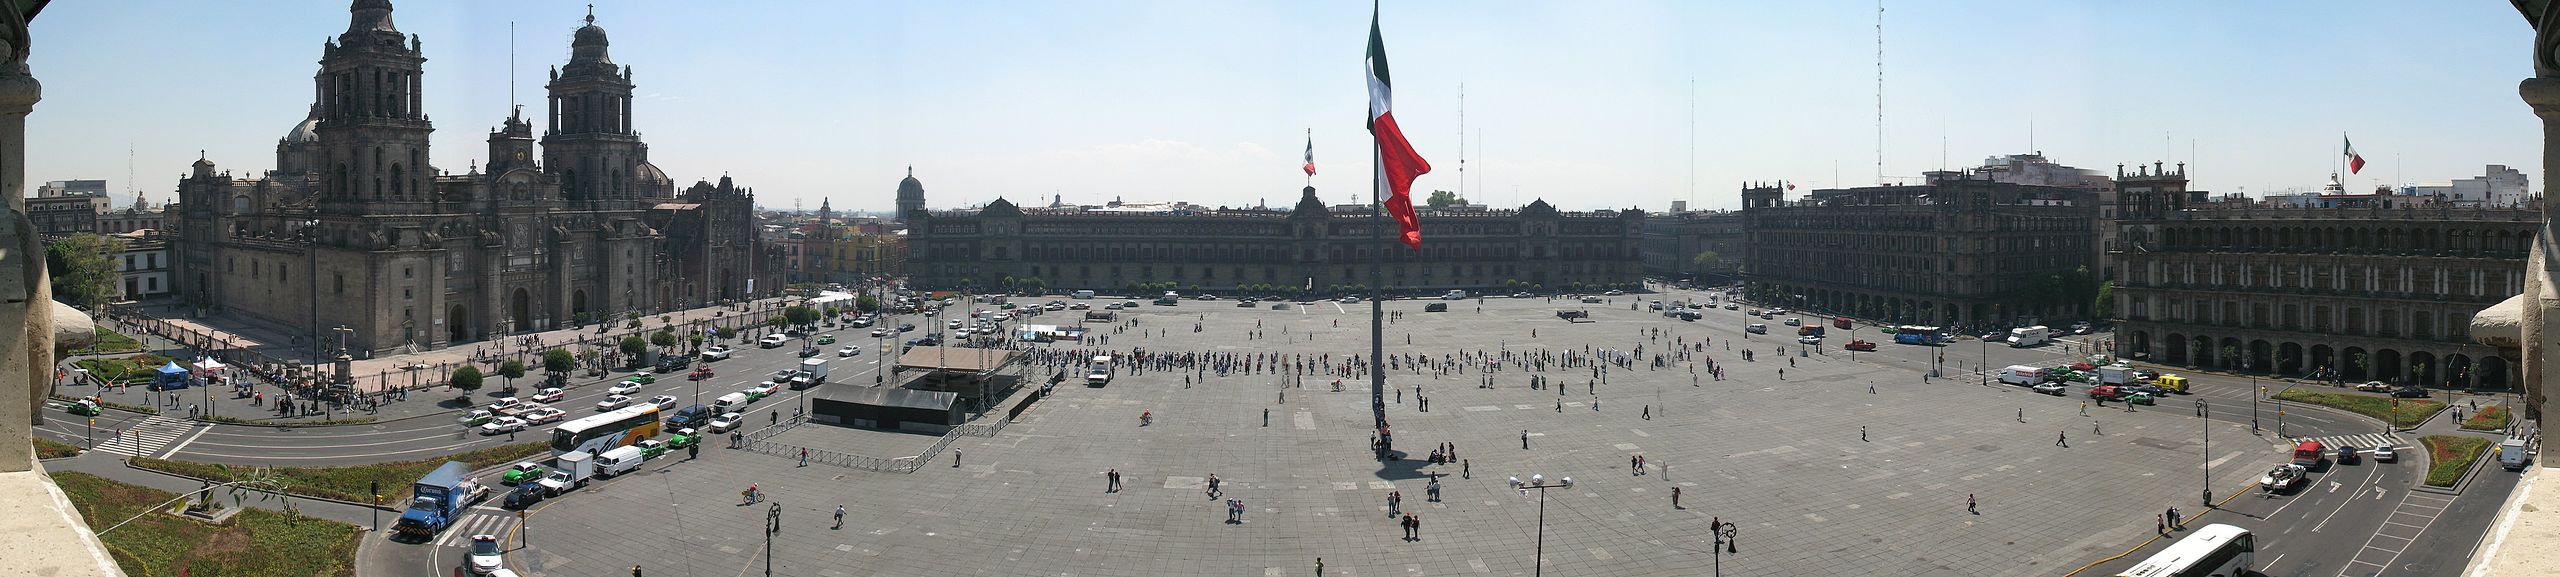 Zócalo Mexico City